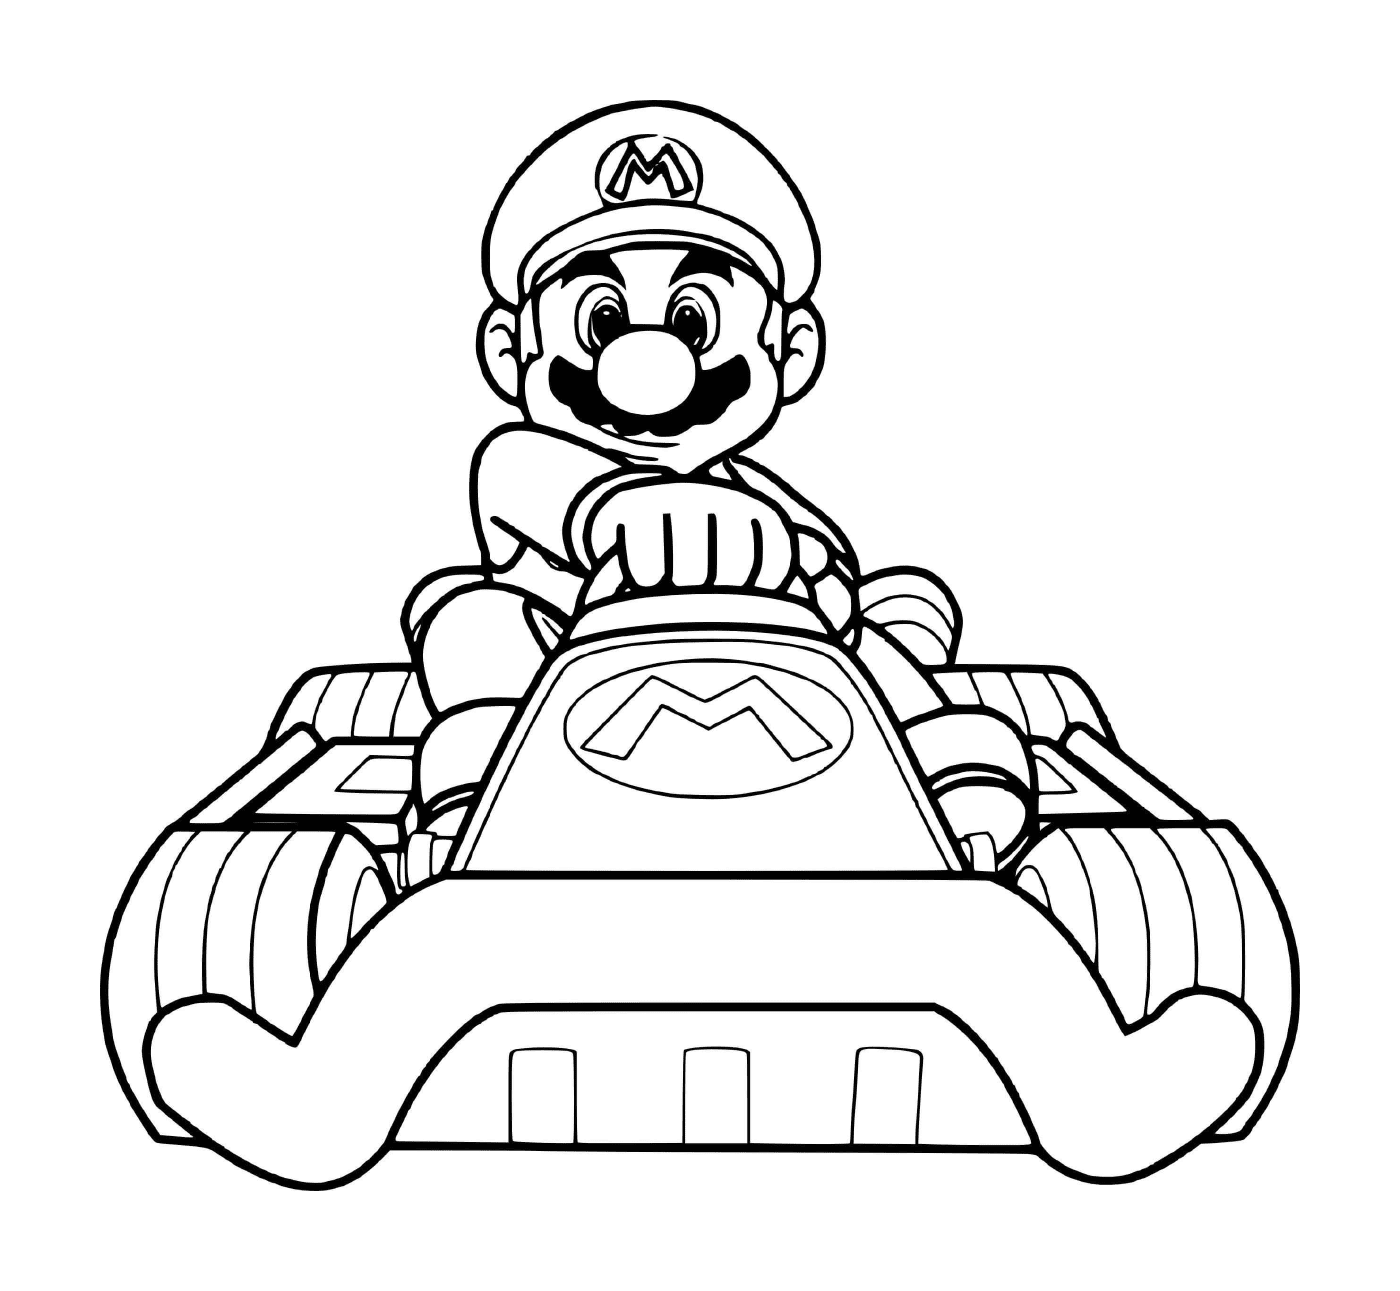  Марио готов к спортивной гонке 